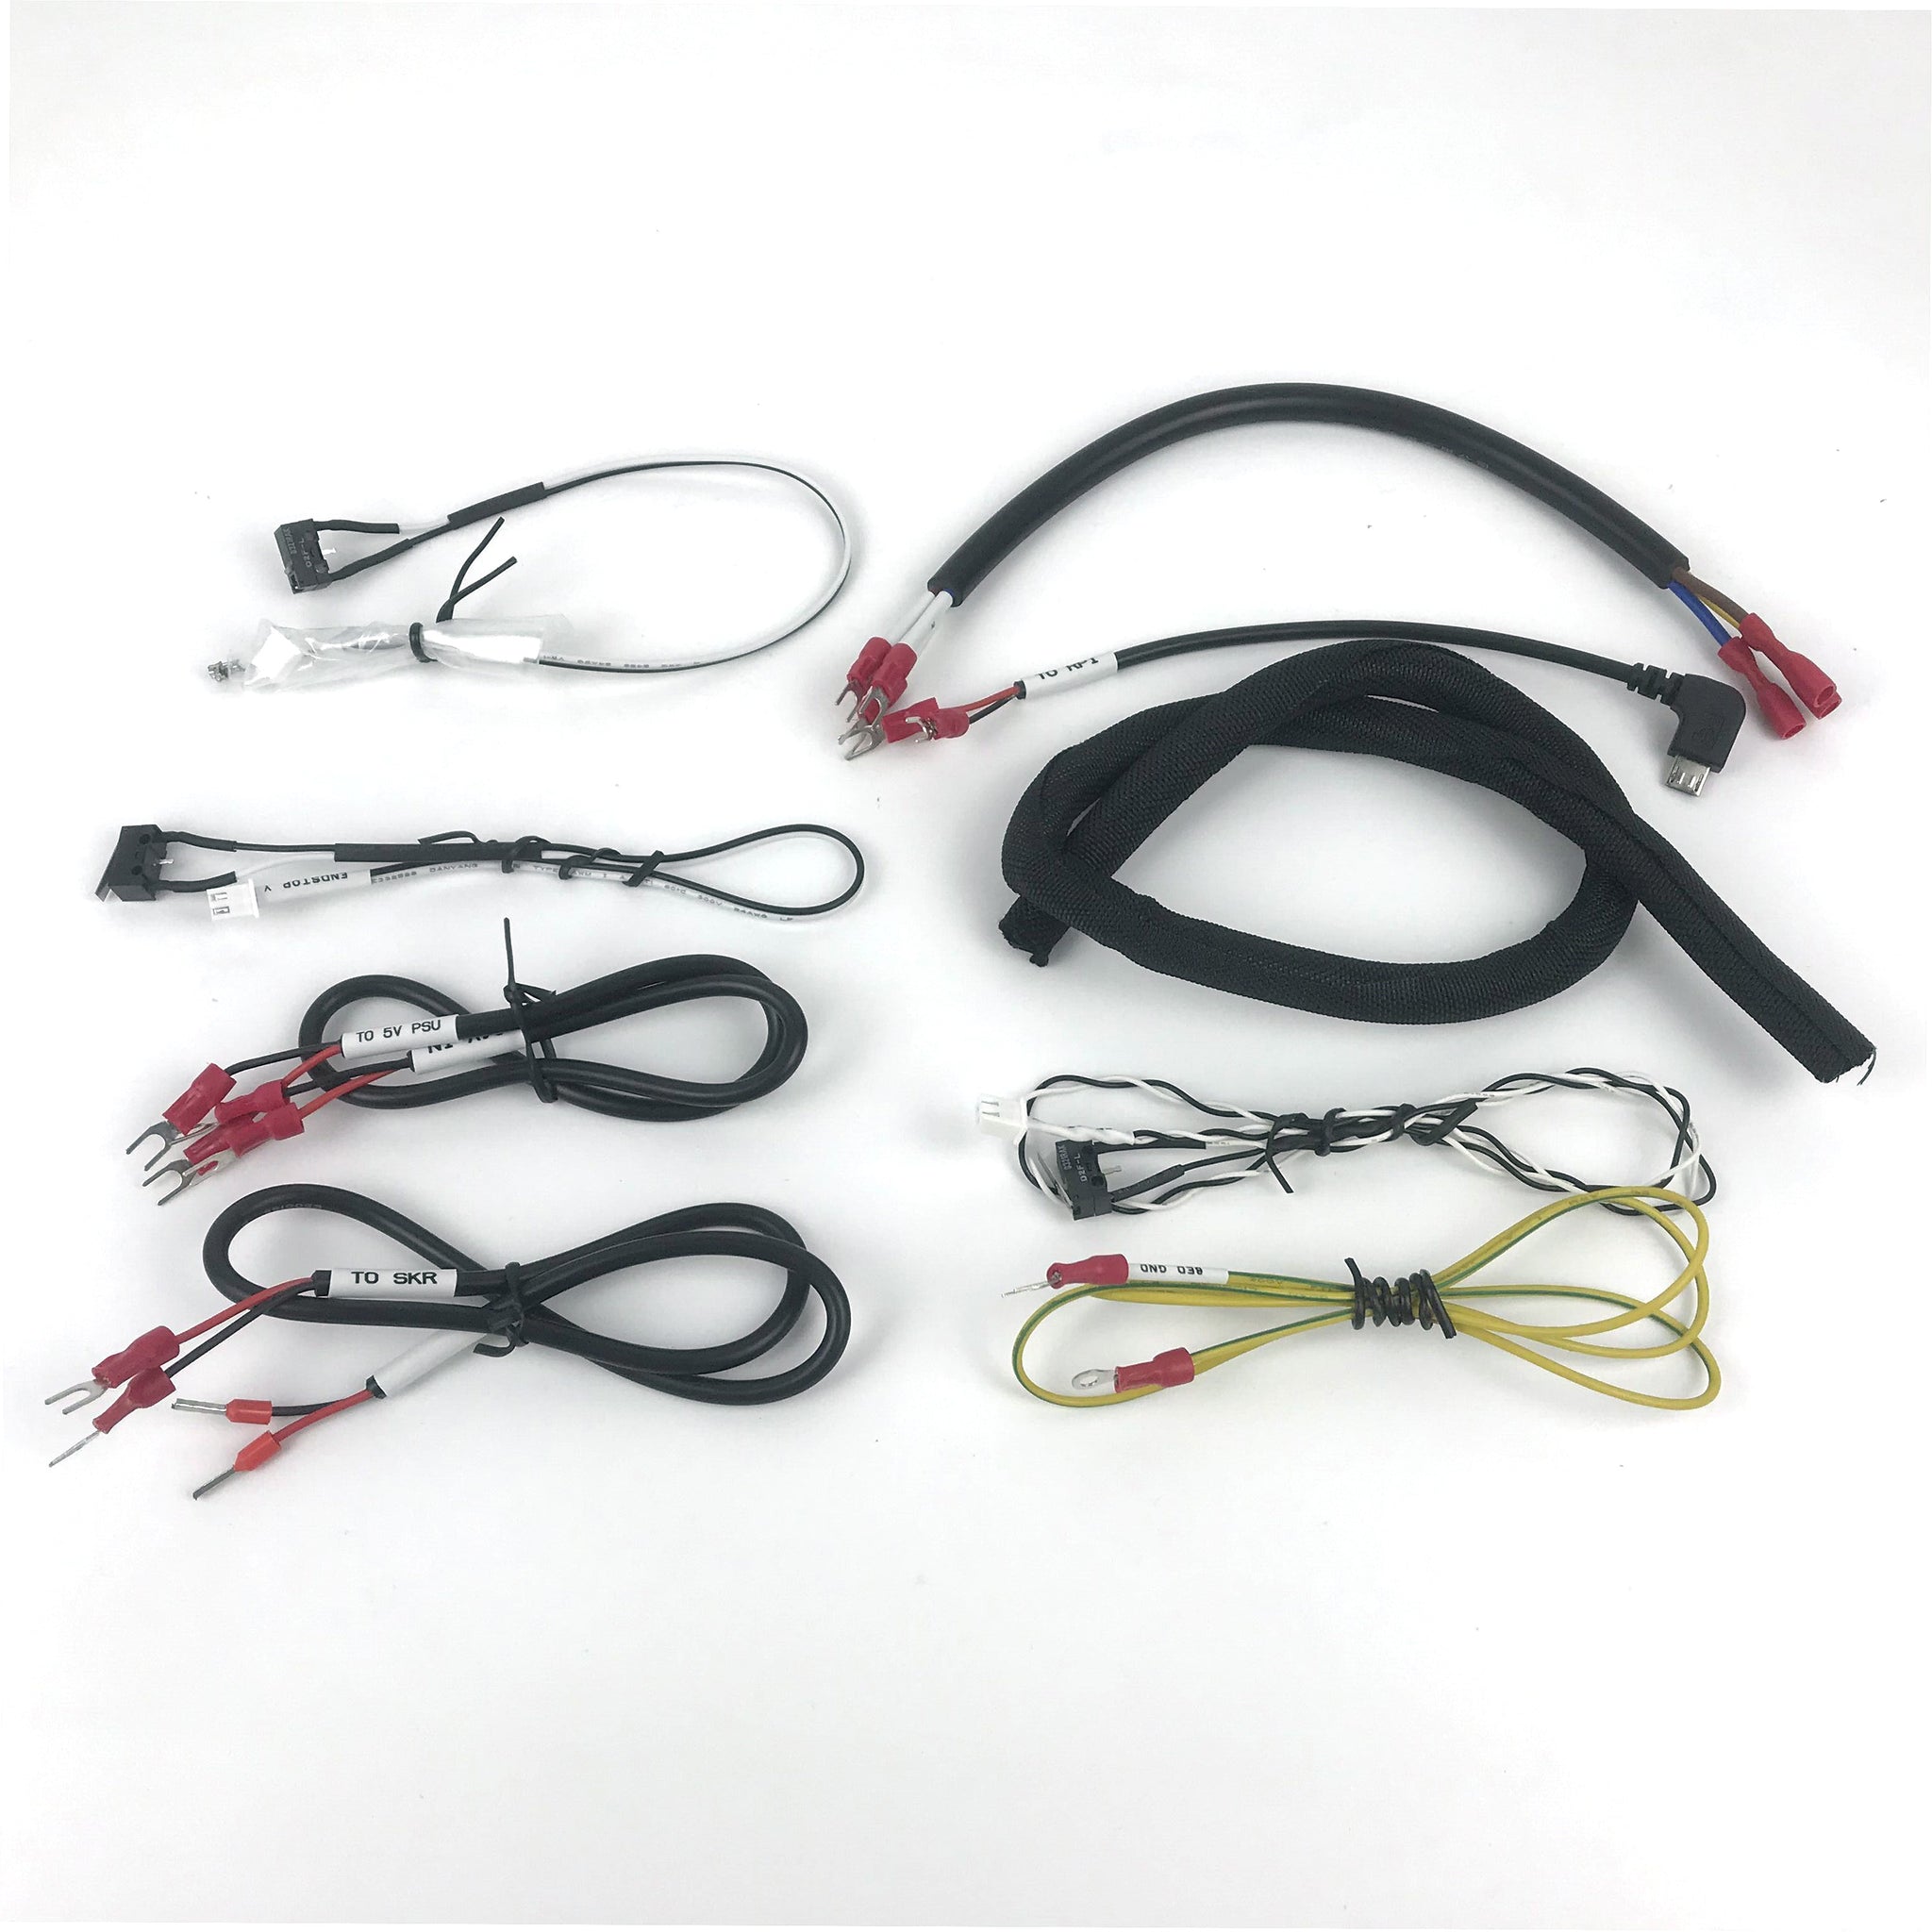 LDO Voron V0.1 Cable Kit